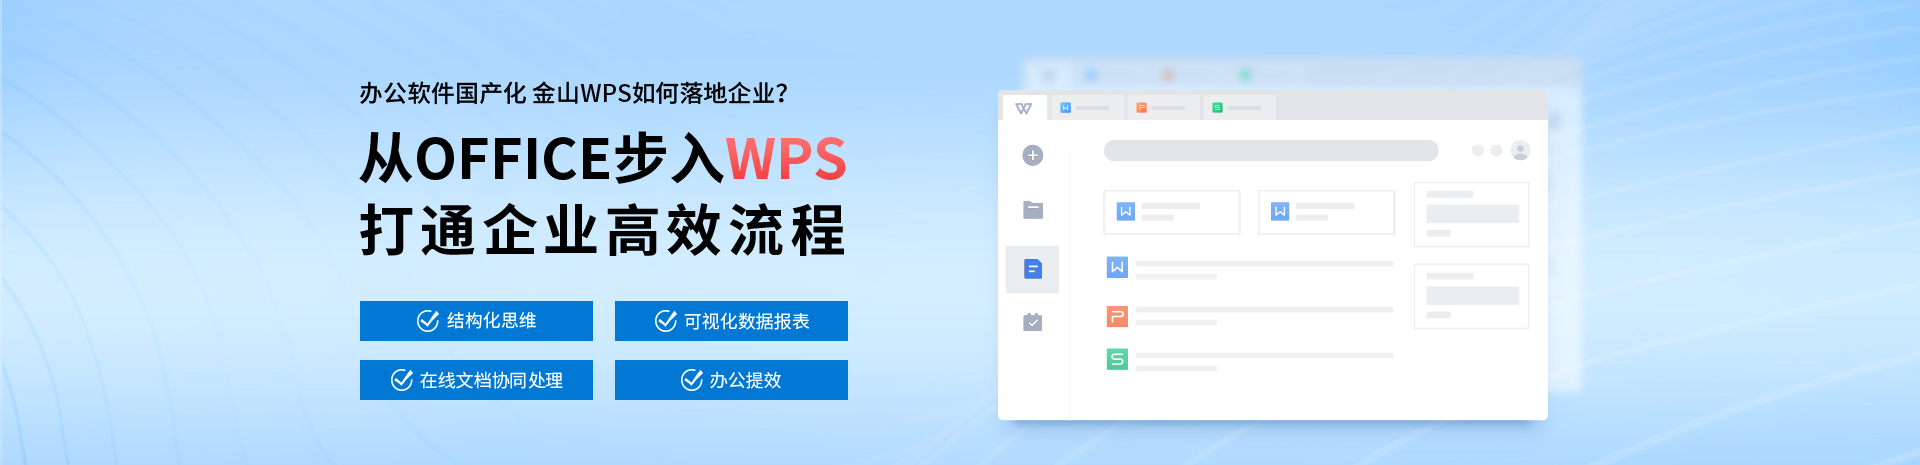 北京办公软件-Word培训